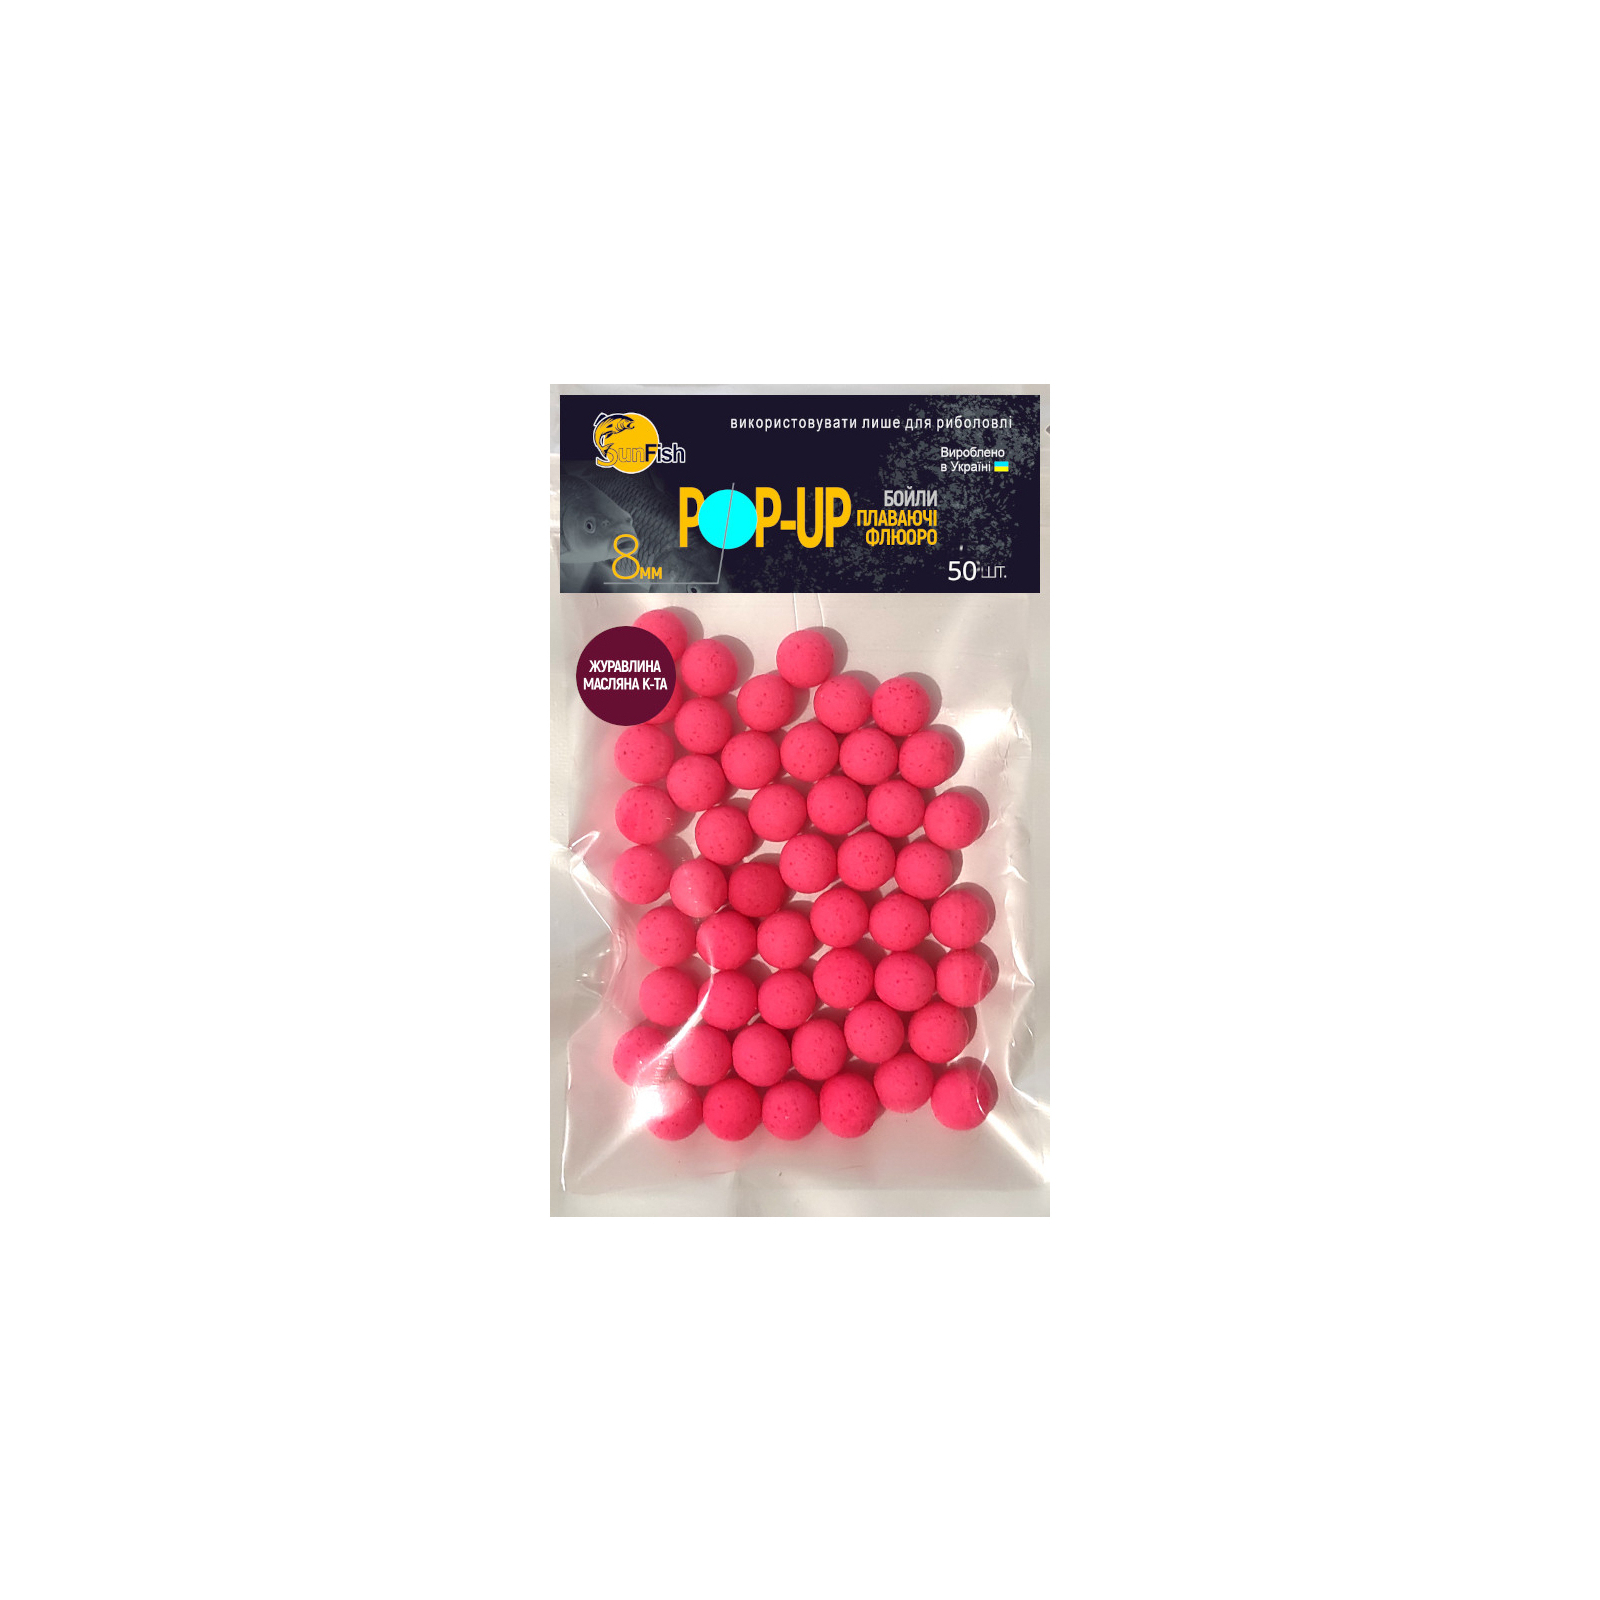 Бойл SunFish Pop-Up Журавлина Масляна Кислота 8 mm 50 шт (SF220647)